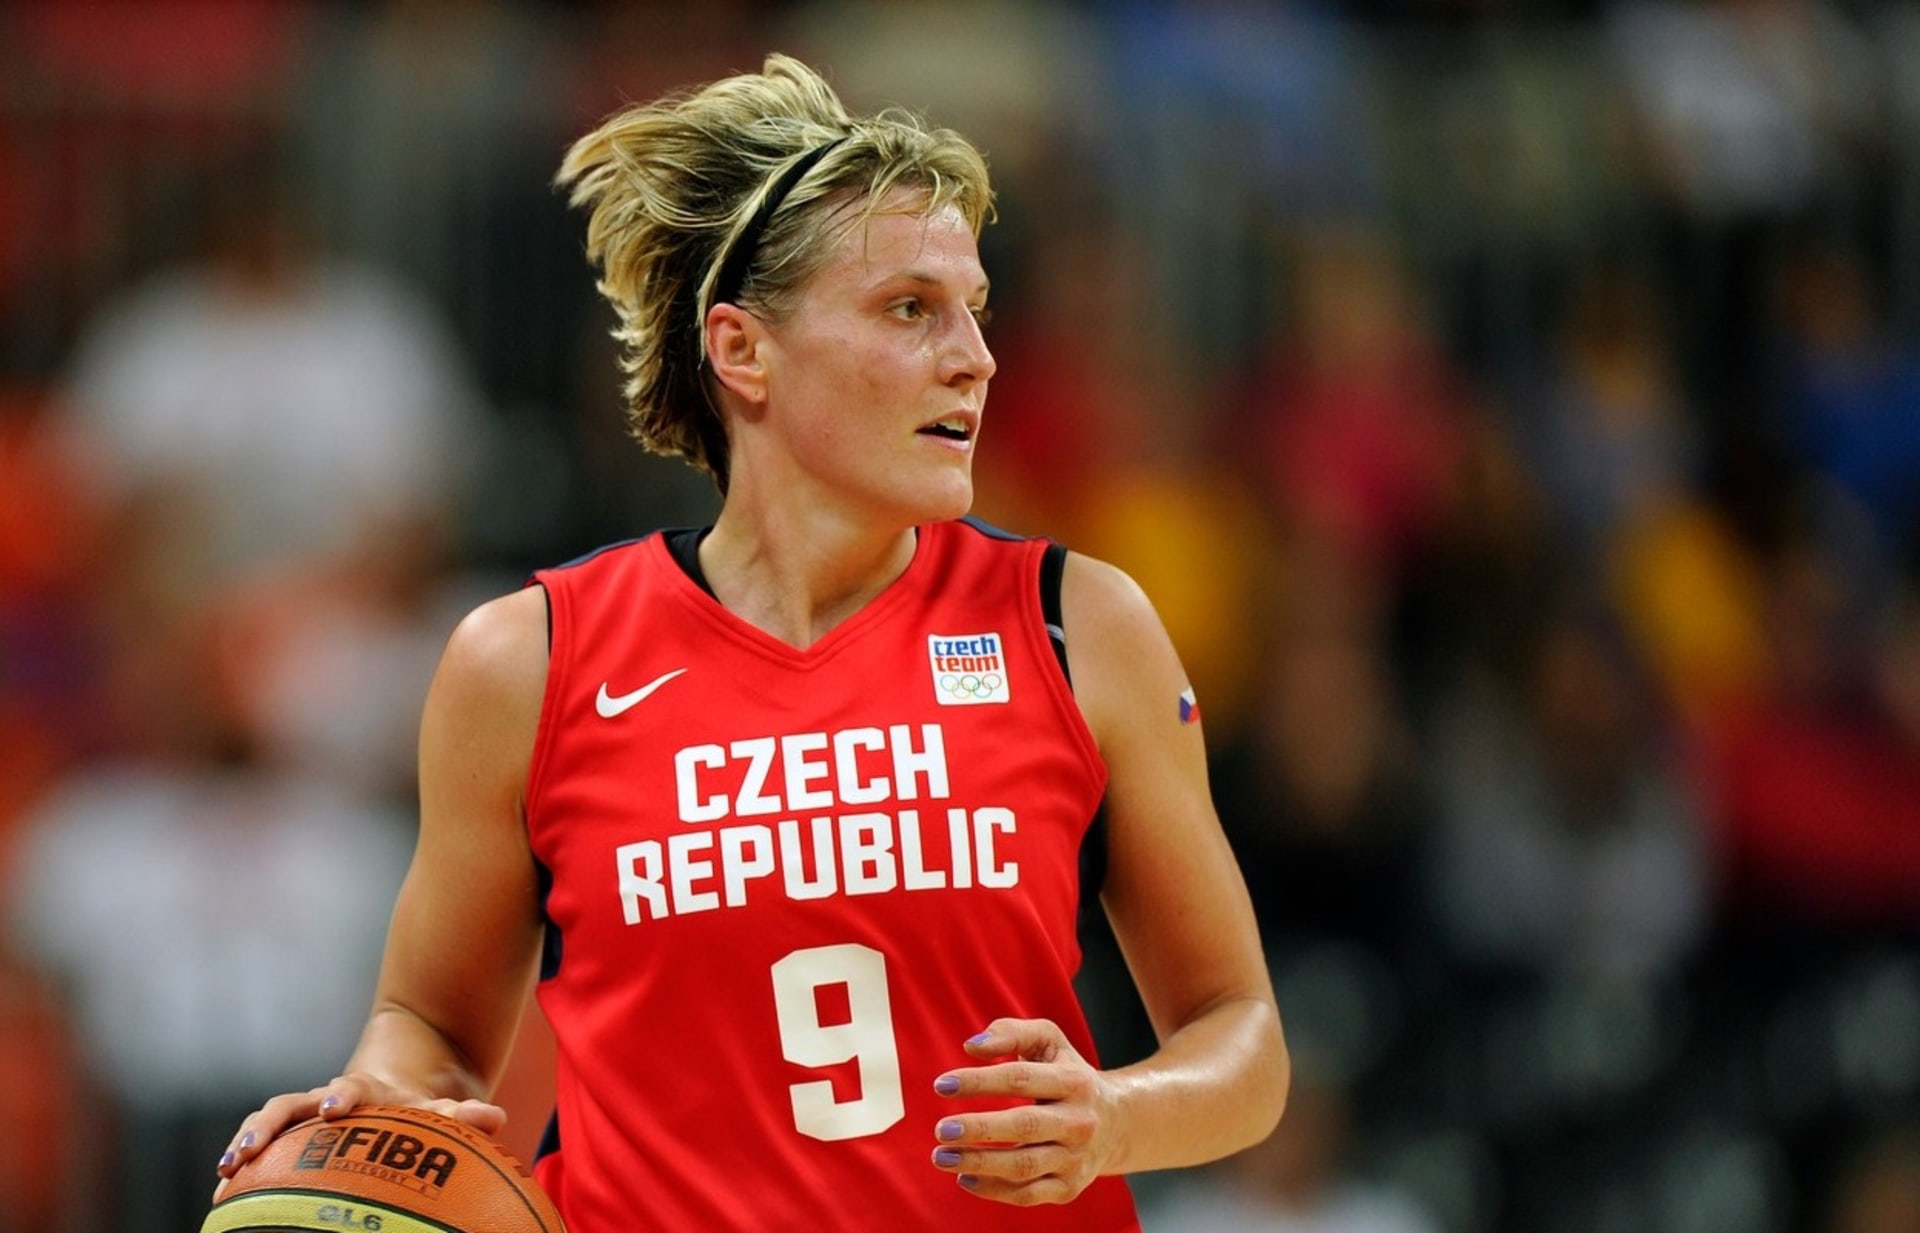 Po Jiřím Zídkovi starším bude mít Česká republika druhého zástupce v Síni slávy FIBA. Pocty se dočká basketbalistka Hana Horáková.